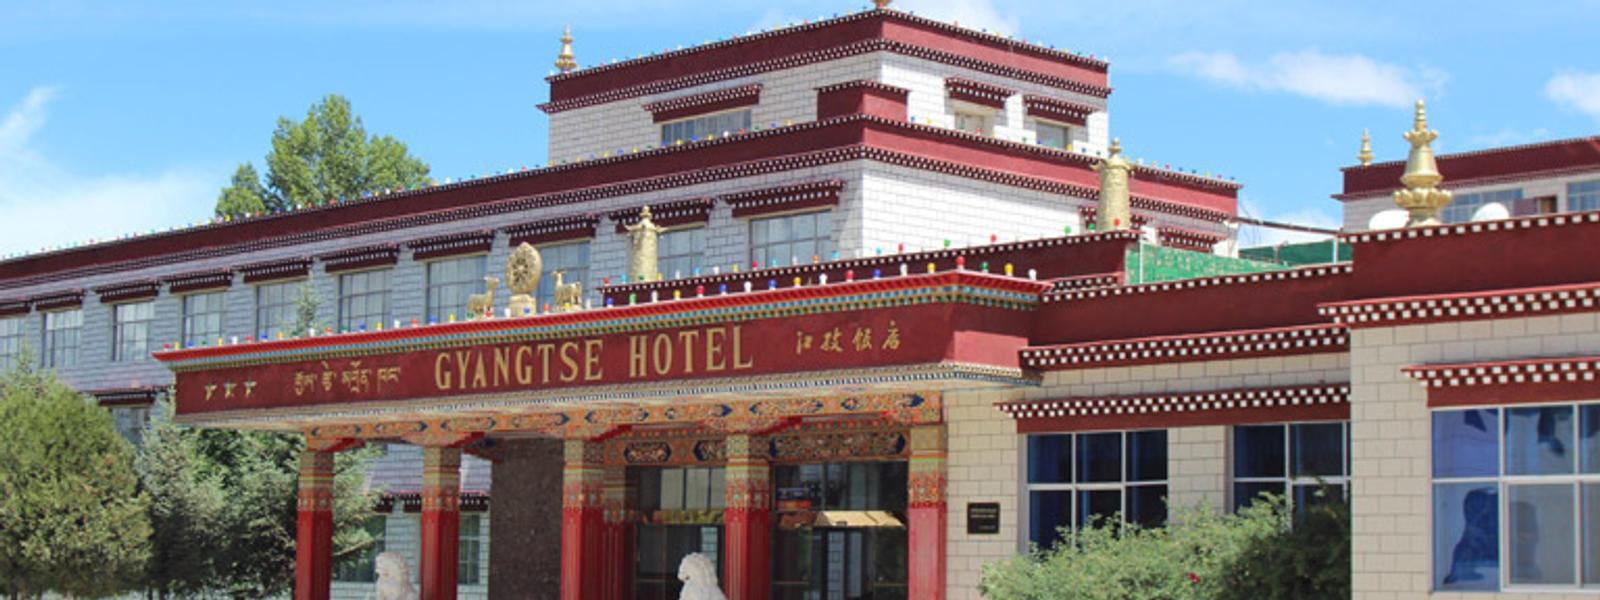 Tibet hotel